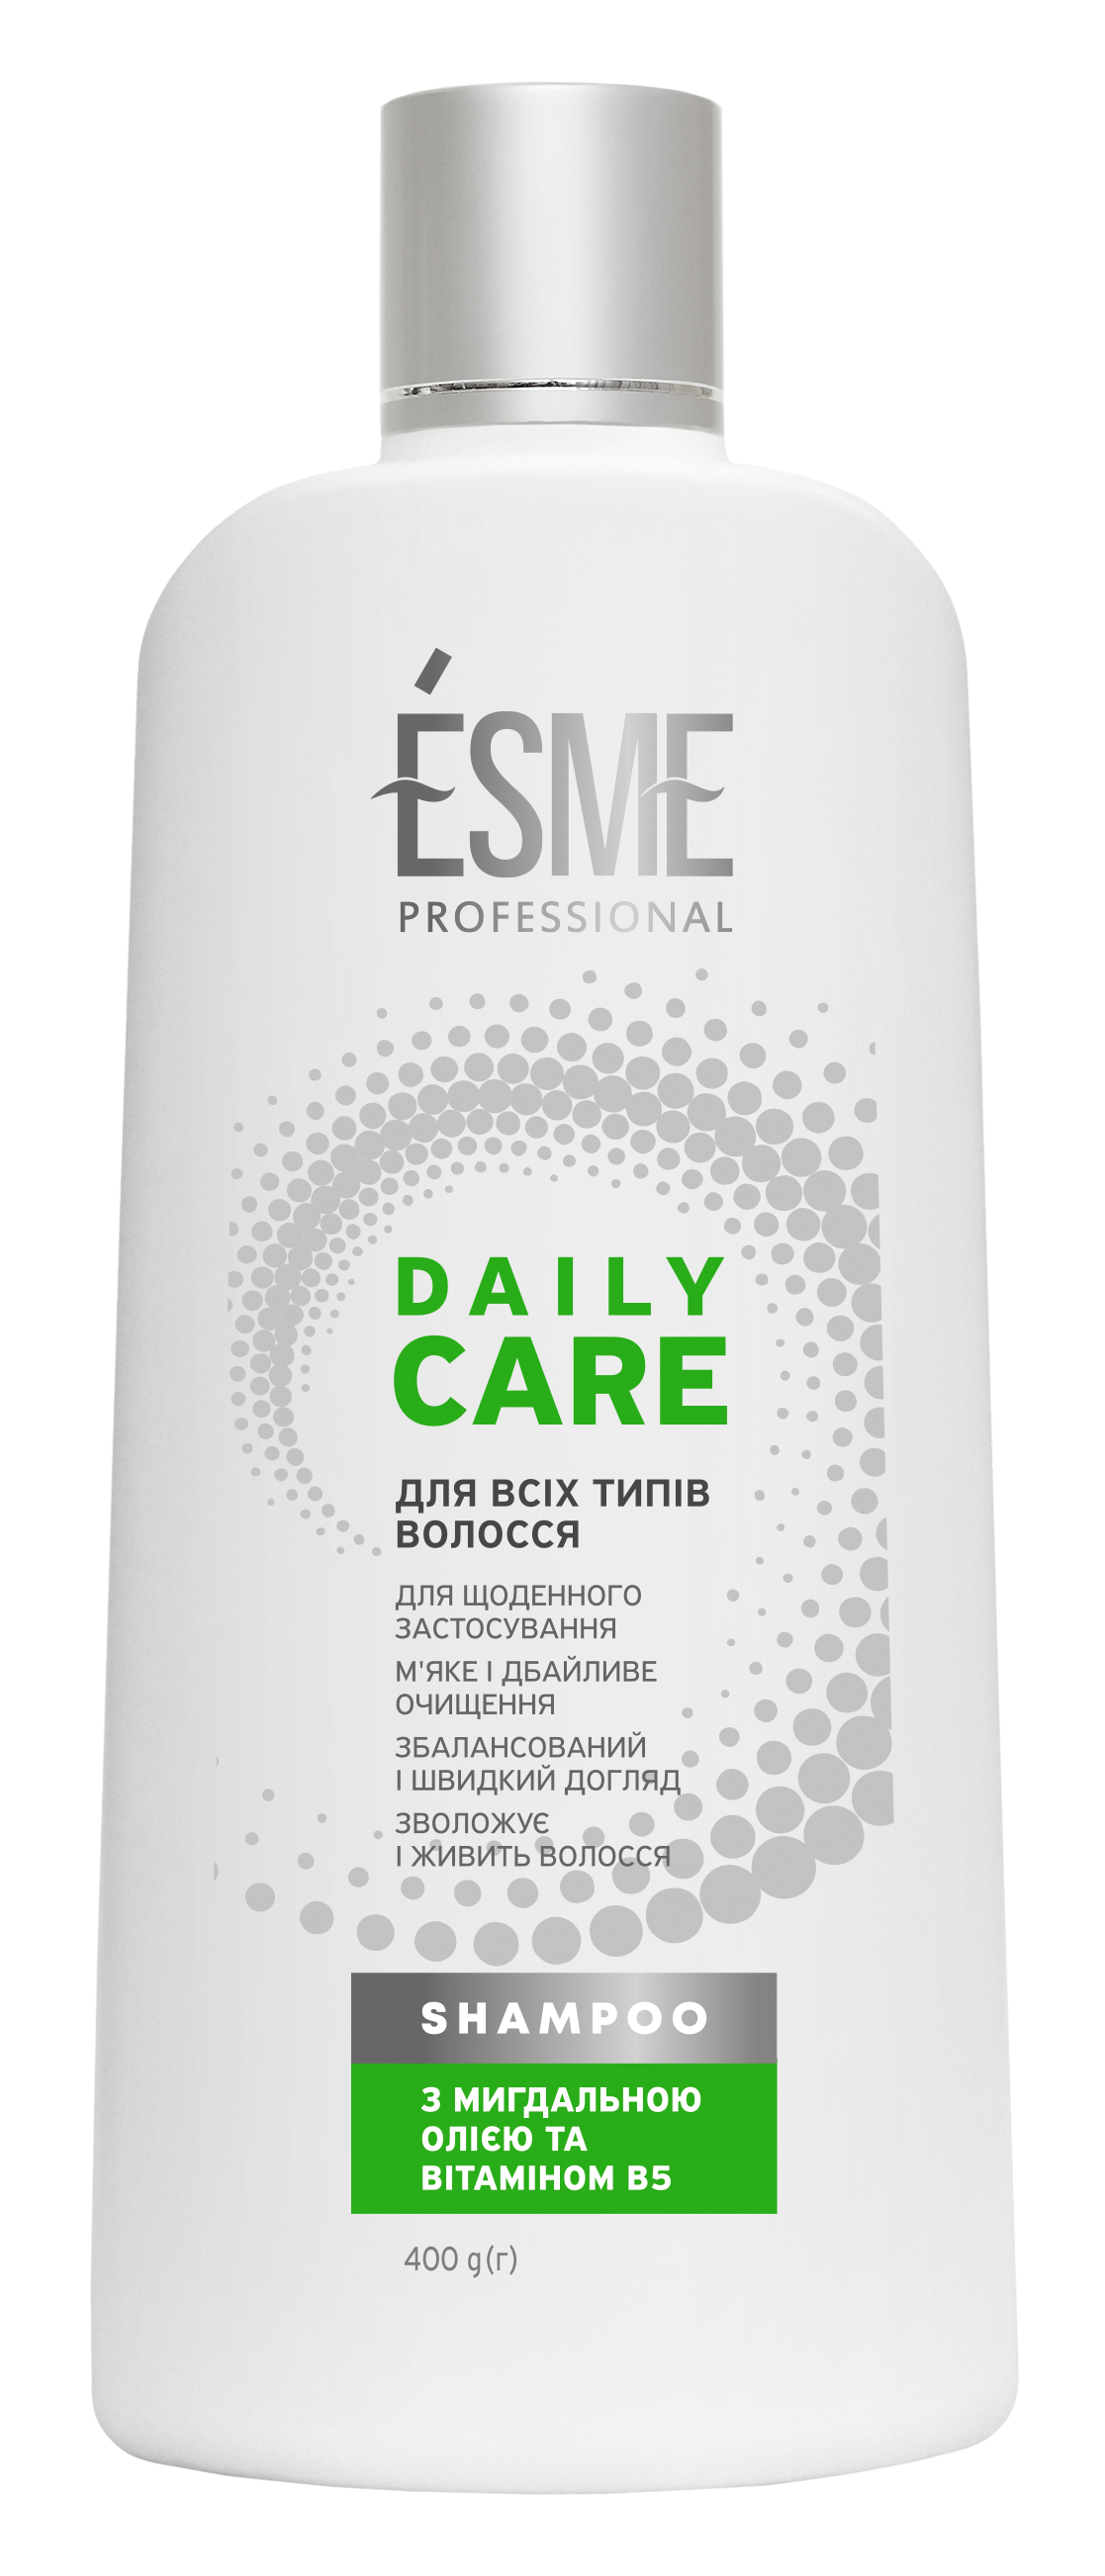 Шампунь Esme Daily Care з мигдальним маслом та вітаміном В5, 400 мл - фото 1